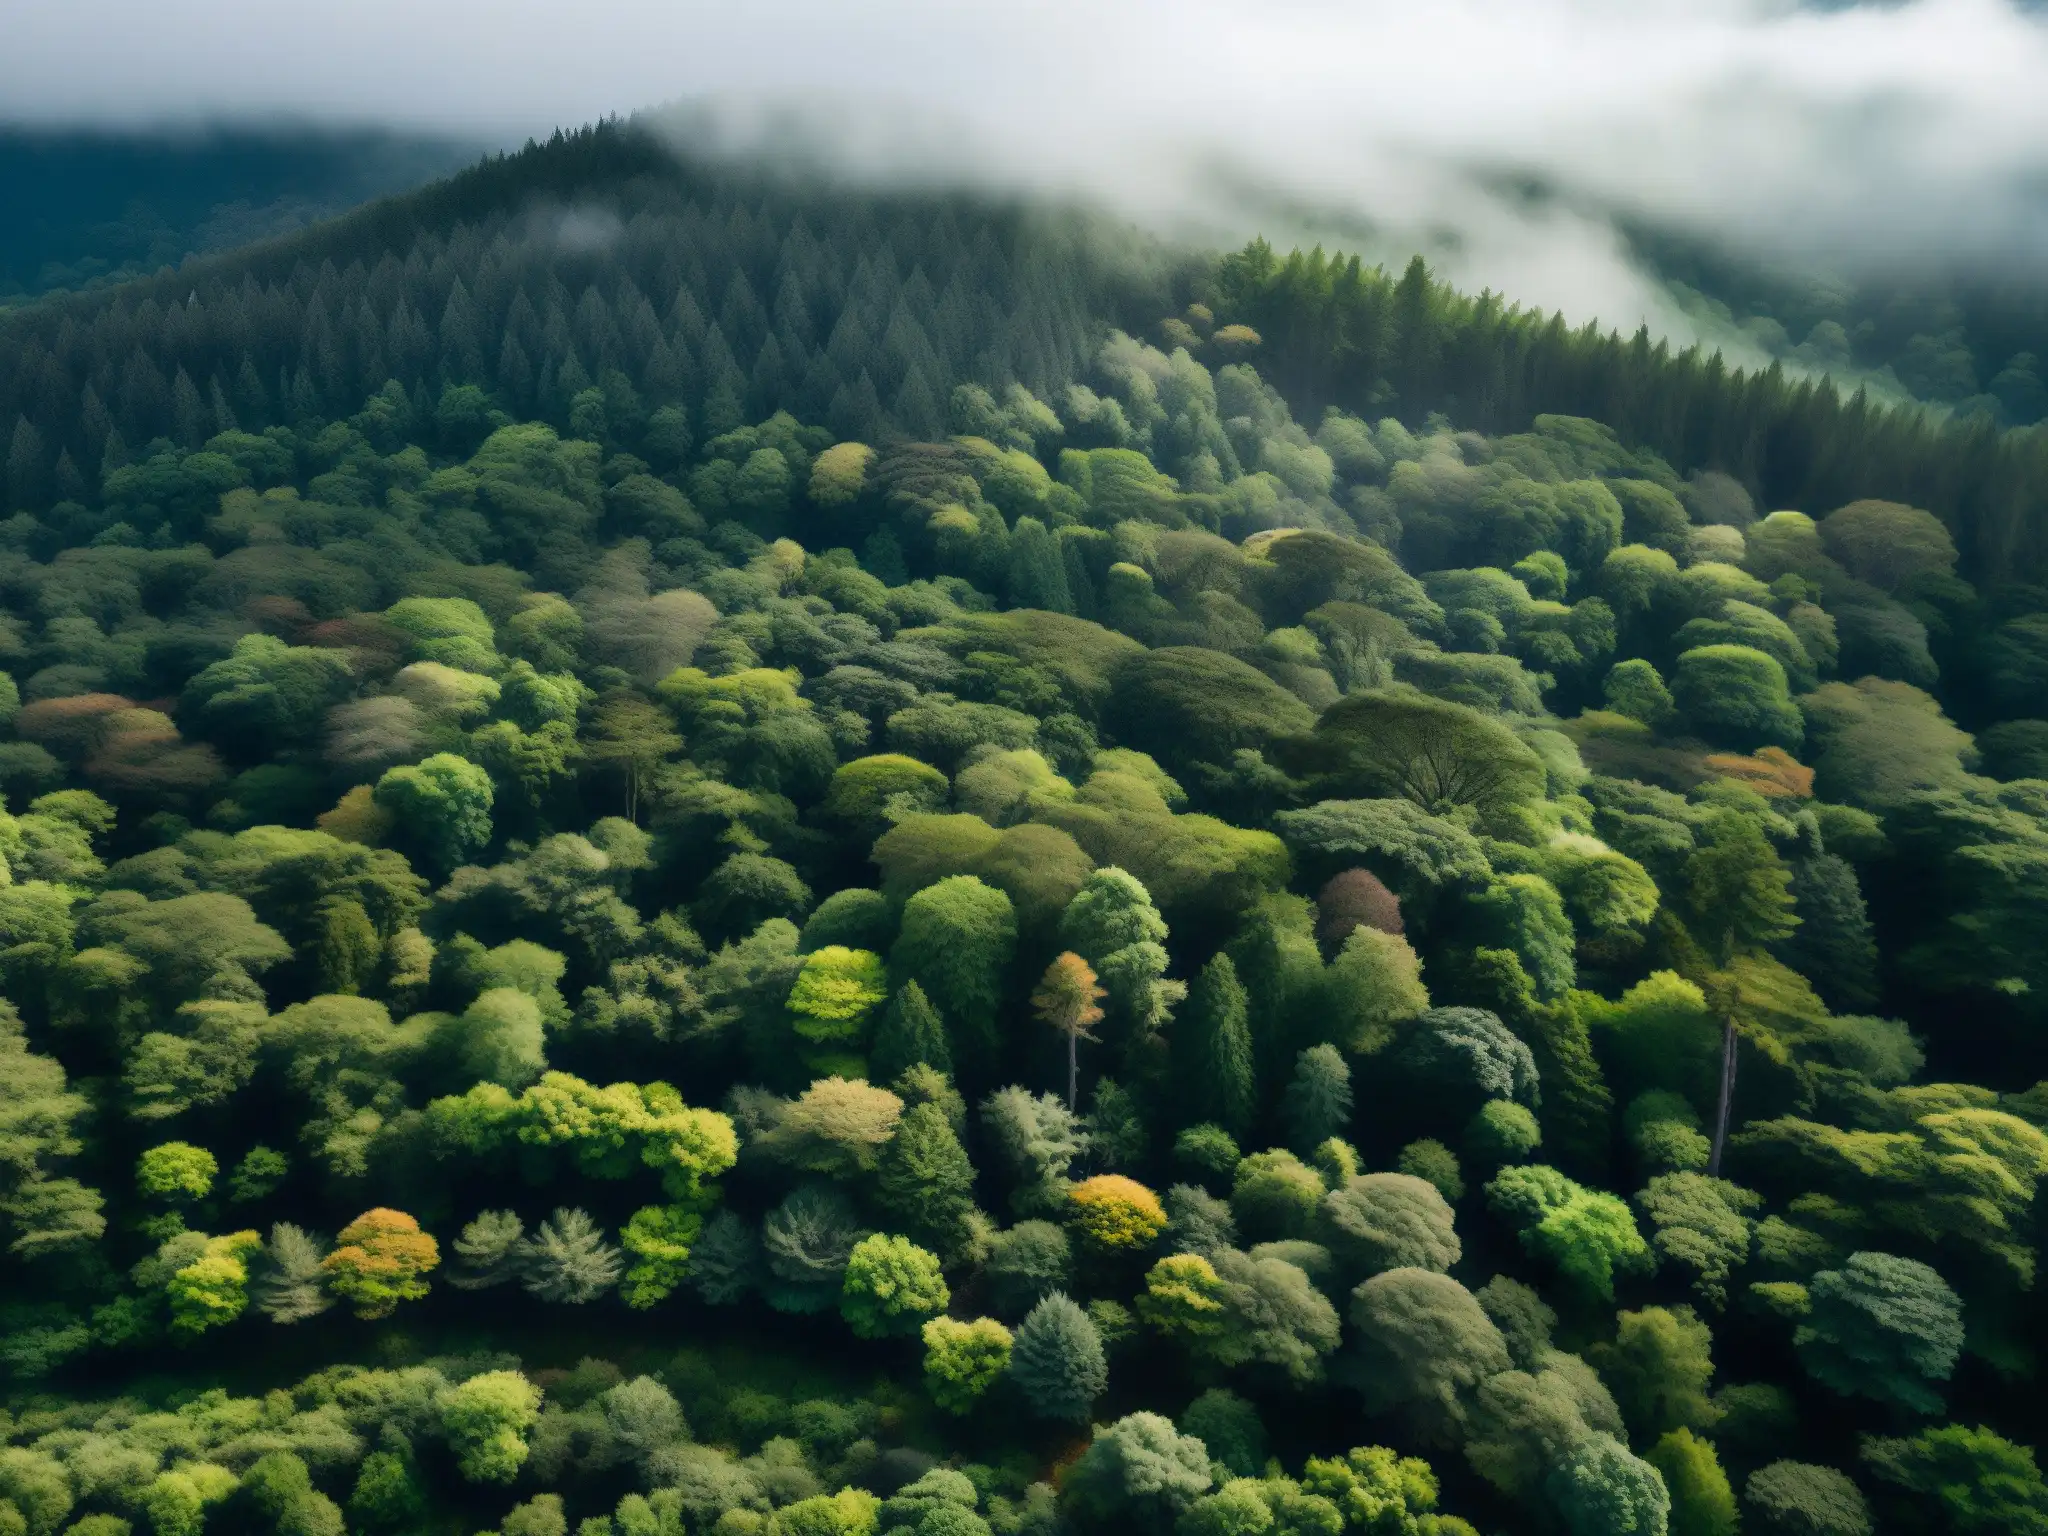 Una versión digital del bosque de suicidios Aokigahara, con su densa expanse de árboles bajo una atmósfera neblinosa y etérea